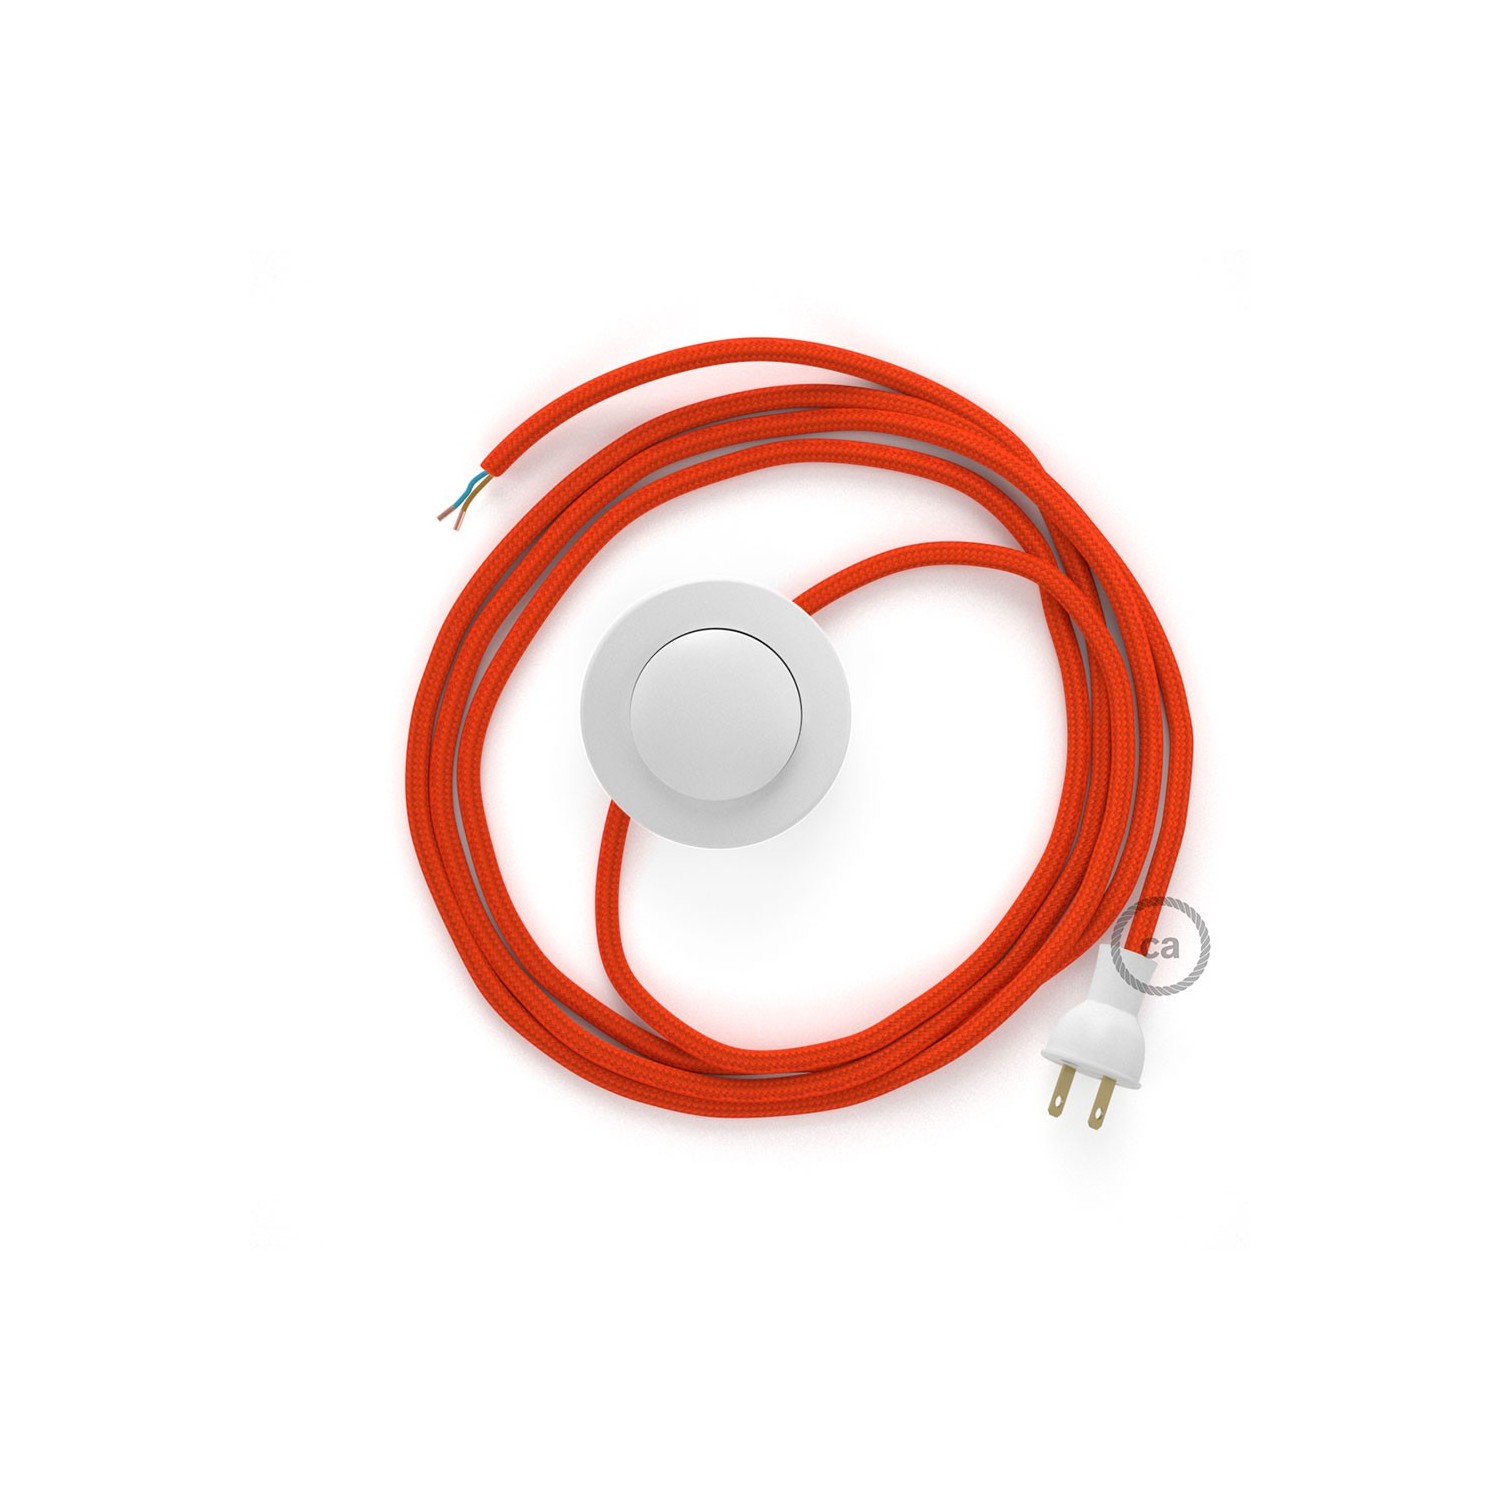 Cableado para lámpara de piso, cable RM15 Rayón Naranja 3 m. Elige tu el color de la clavija y del interruptor!